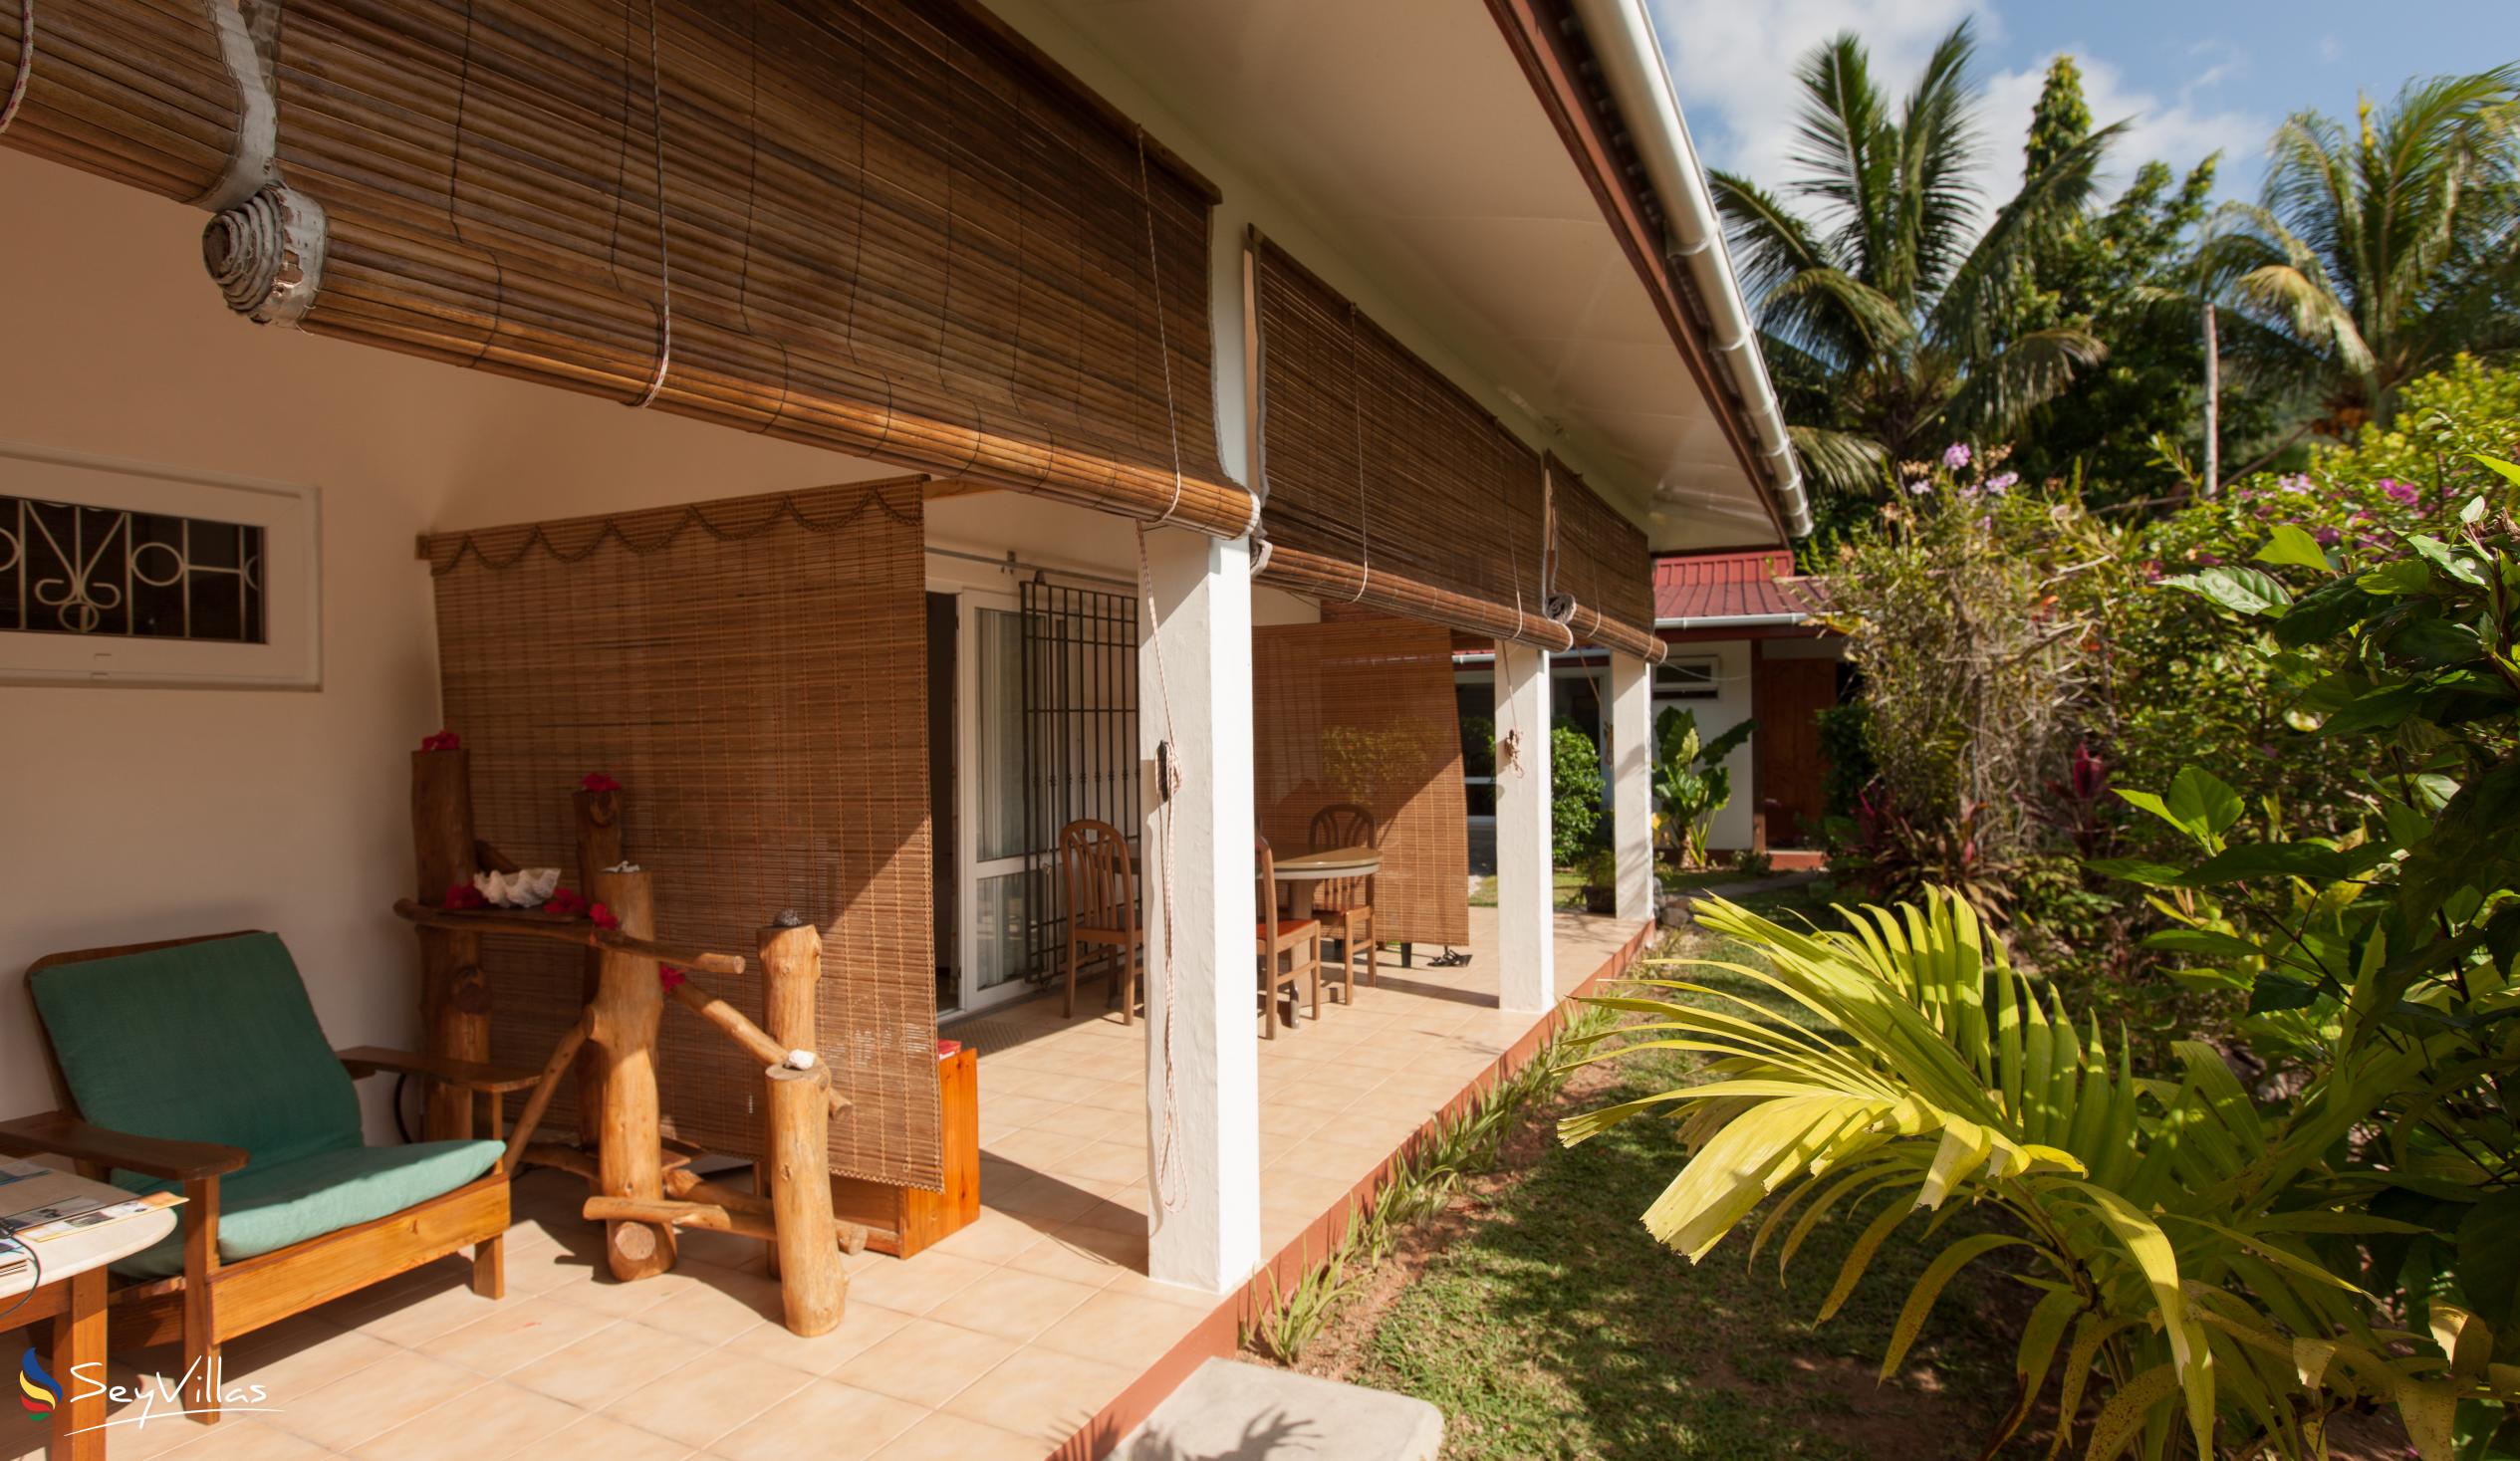 Foto 8: Le Relax St. Joseph Guest House - Extérieur - Praslin (Seychelles)